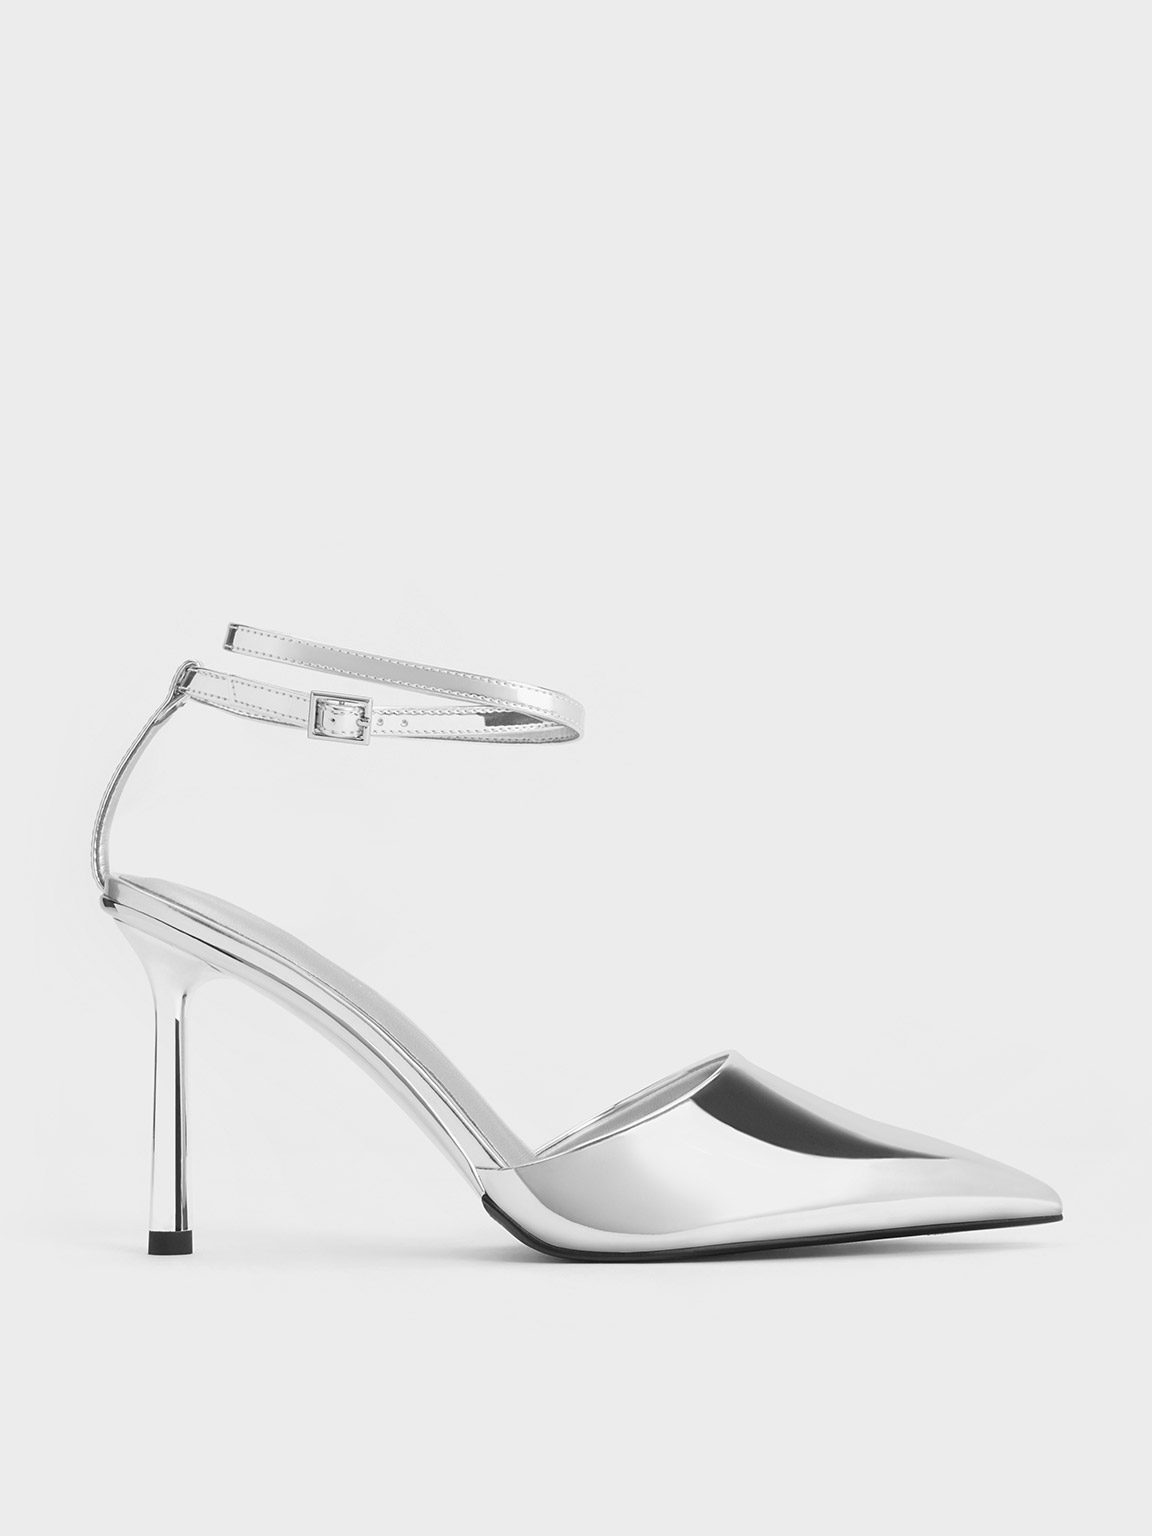 Black Velvet Almond Toe Ankle Strap Heels | Heels, Black velvet shoes, Ankle  strap heels